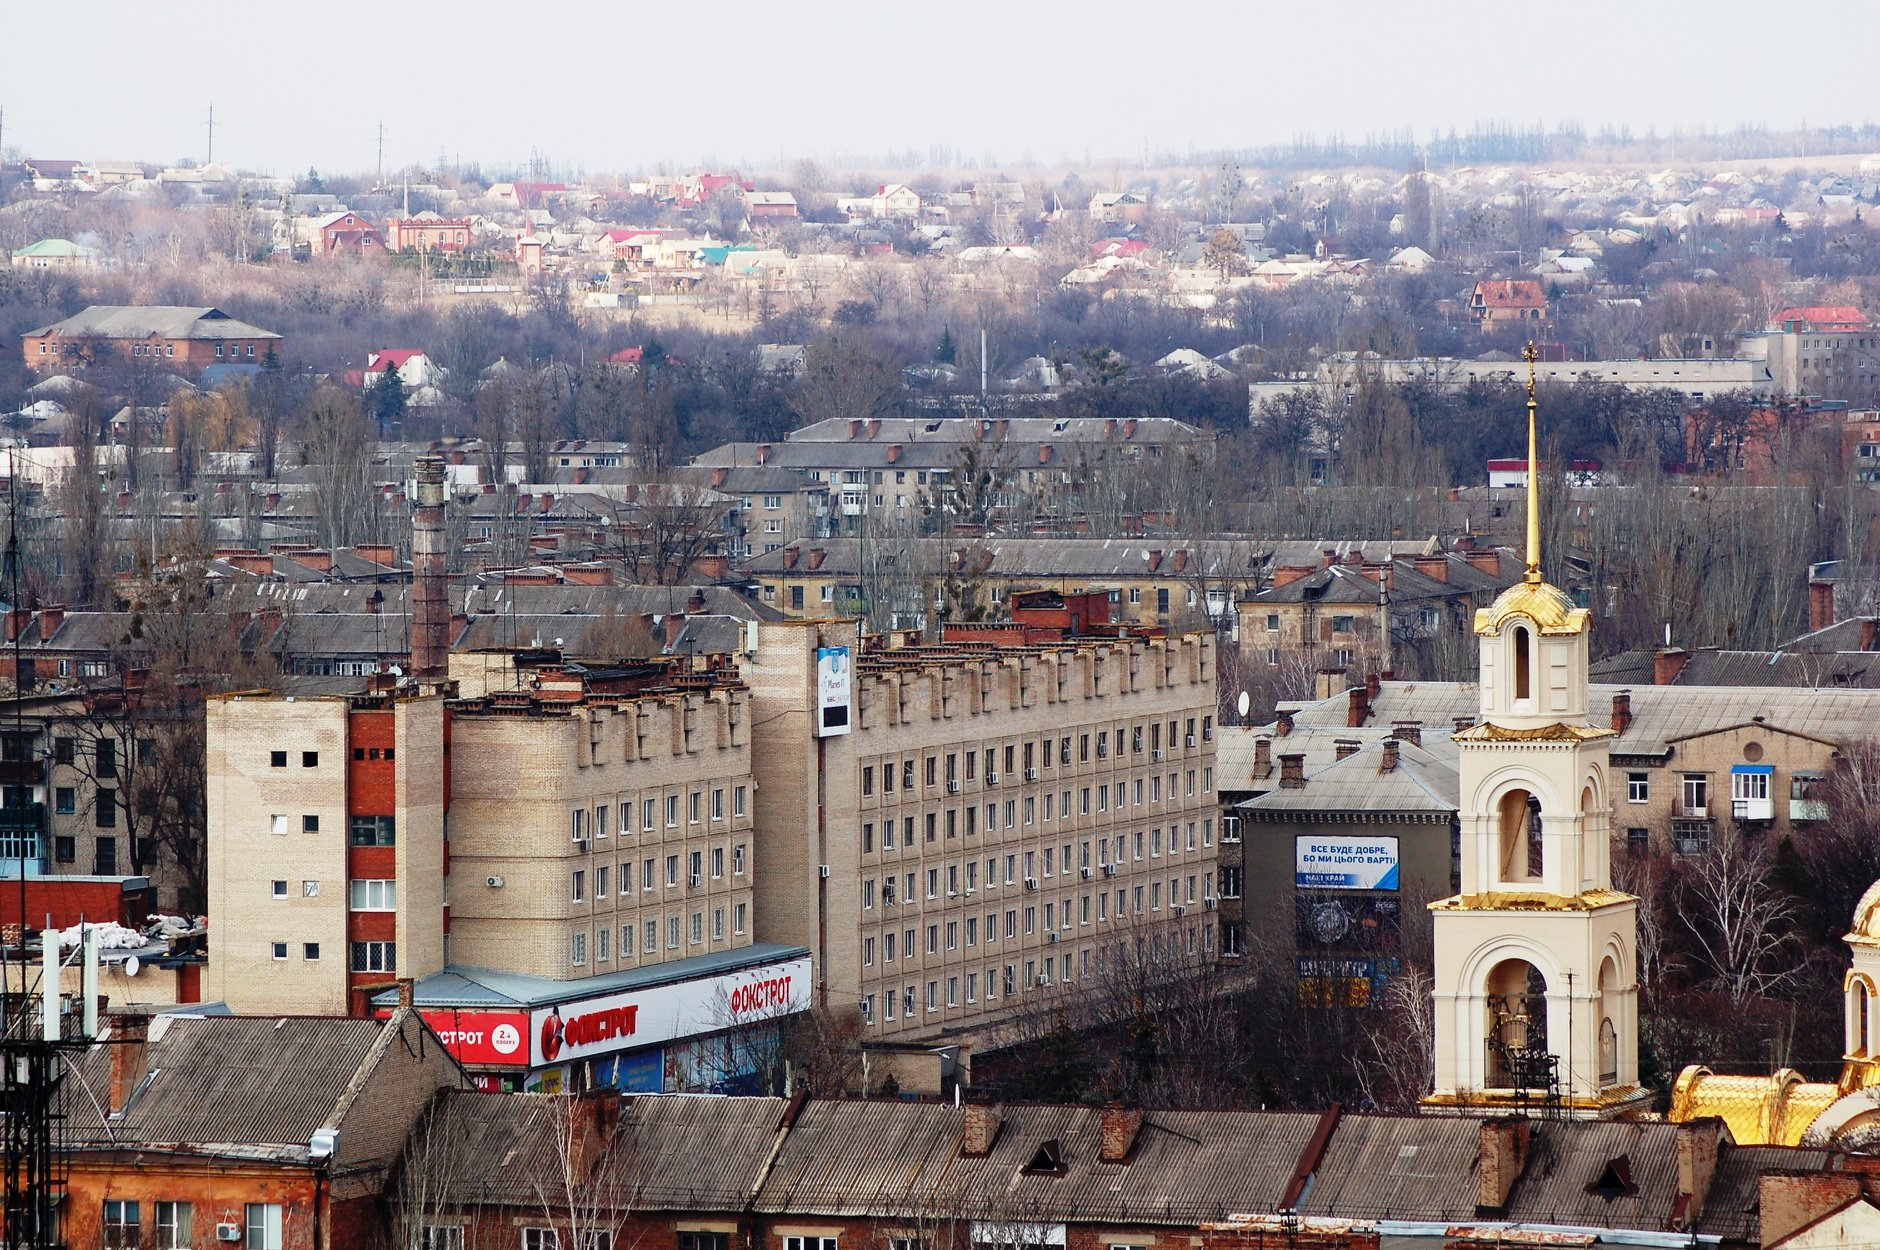 Карантин: в Славянске рекомендуют не покидать город и приостанавливают некоторые платежи